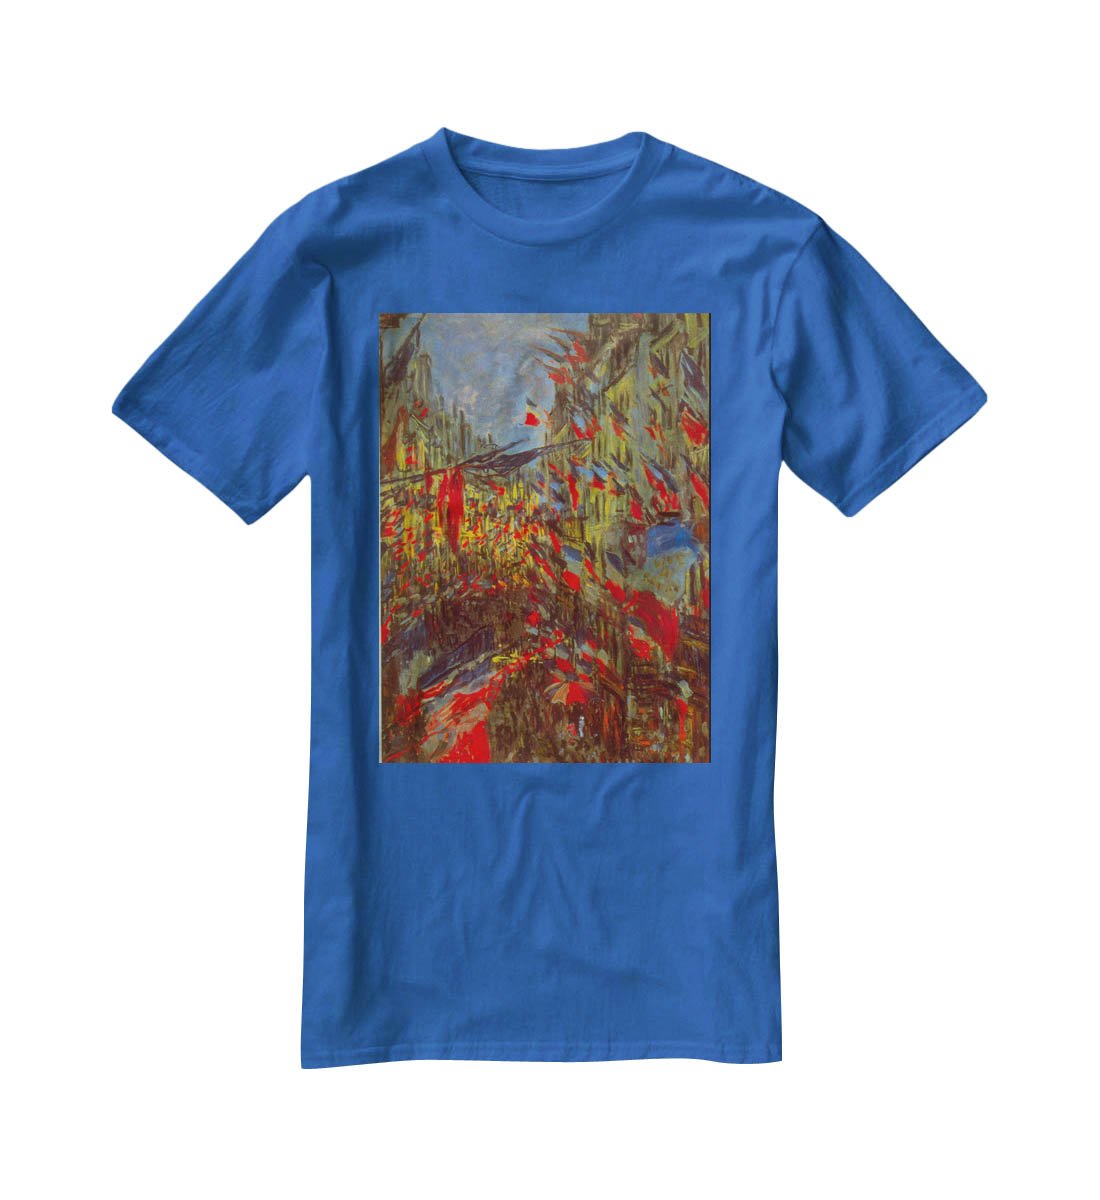 Festivities by Monet T-Shirt - Canvas Art Rocks - 2